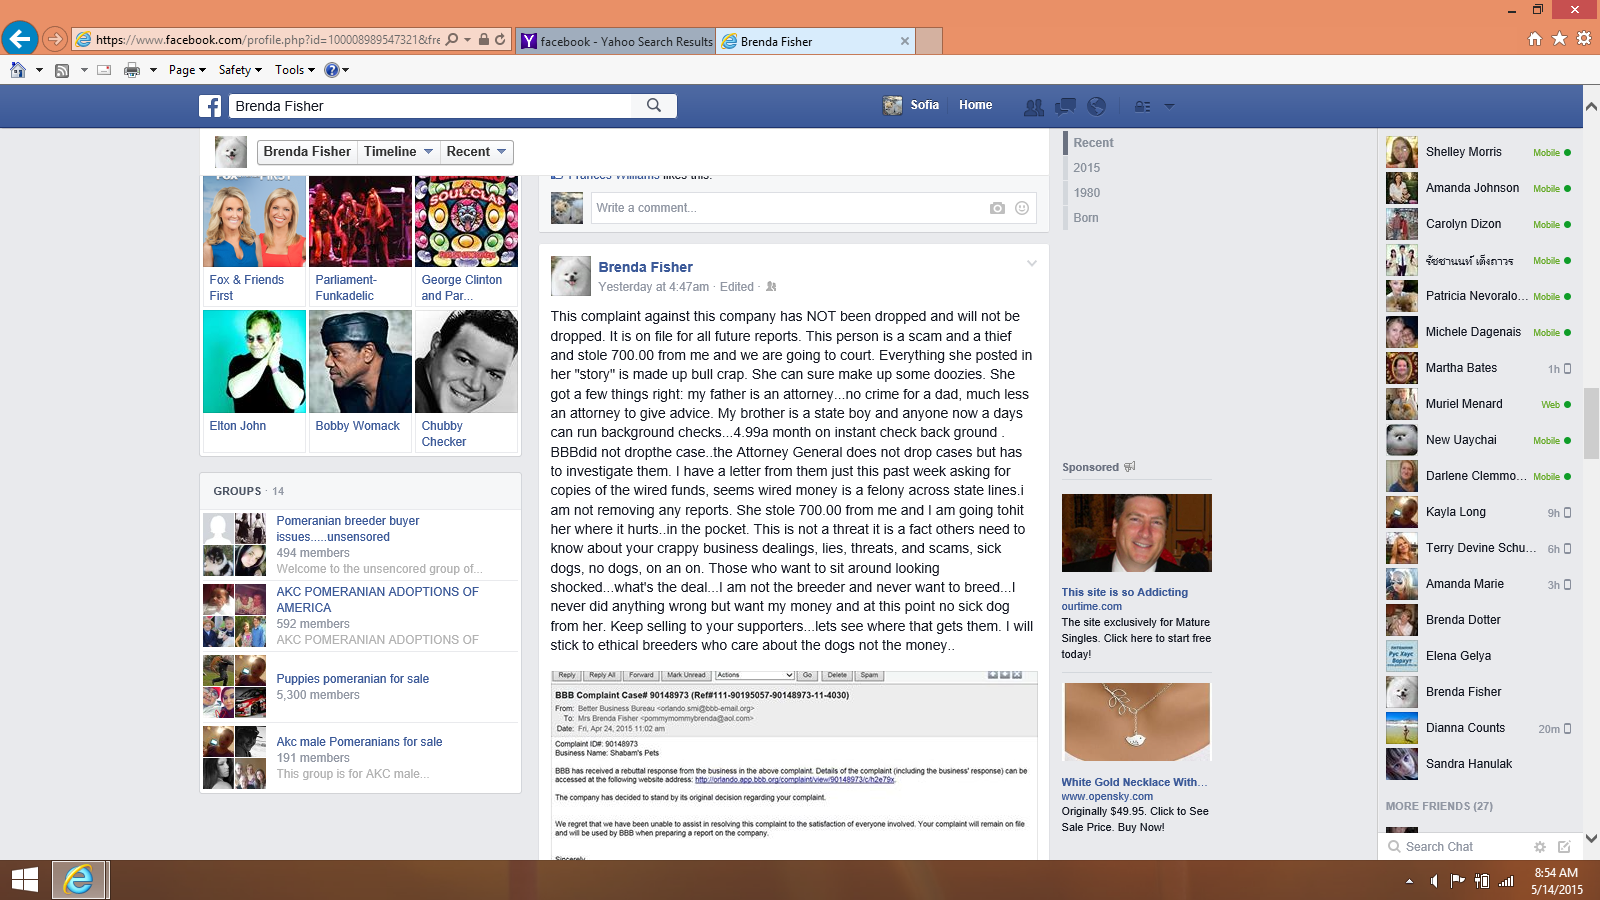 Brenda Fisher attack facebook wall post 